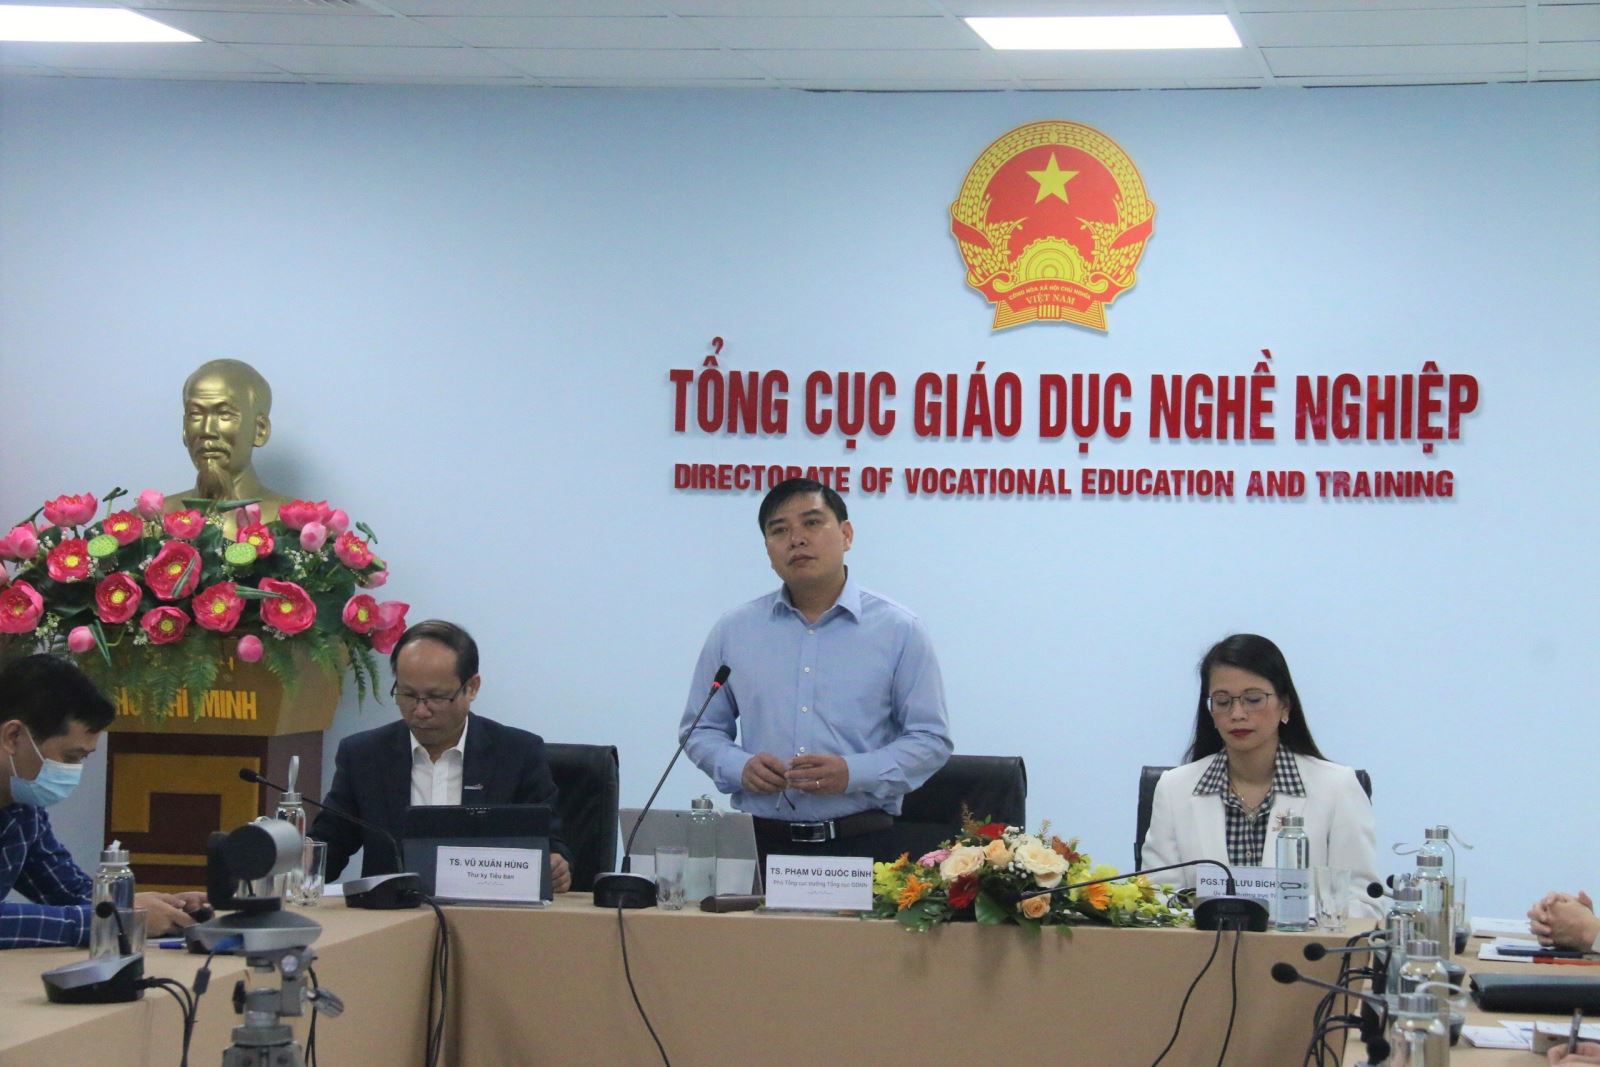 Phó Tổng cục trưởng Tổng cục Giáo dục nghề nghiệp (GDNN) Phạm Vũ Quốc Bình phát biểu tại tọa đàm.